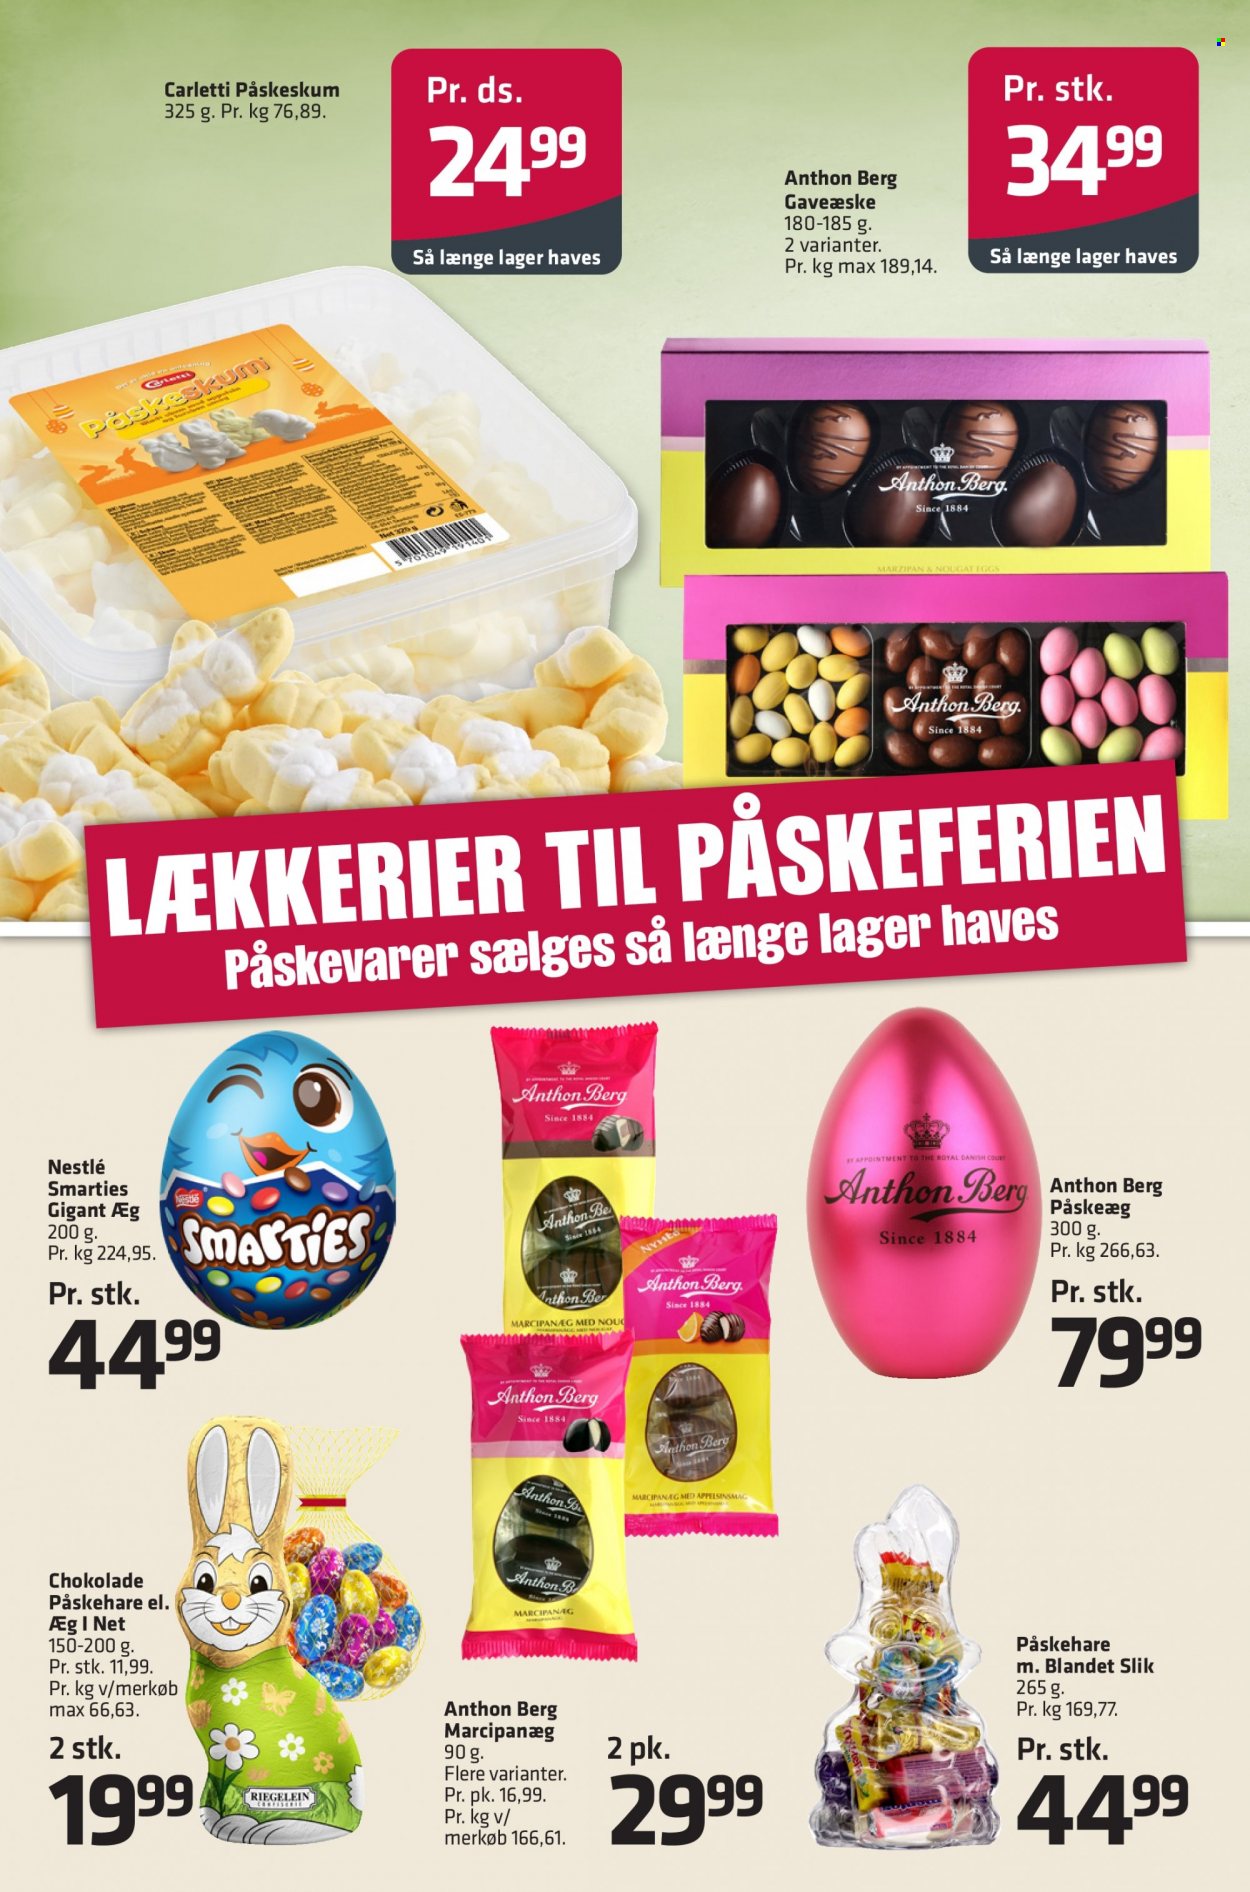 thumbnail - Fleggaard tilbud  - 29.3.2023 - 11.4.2023 - tilbudsprodukter - chokolade, nougat, påskehare, Carletti, Anthon Berg, påskeæg. Side 6.